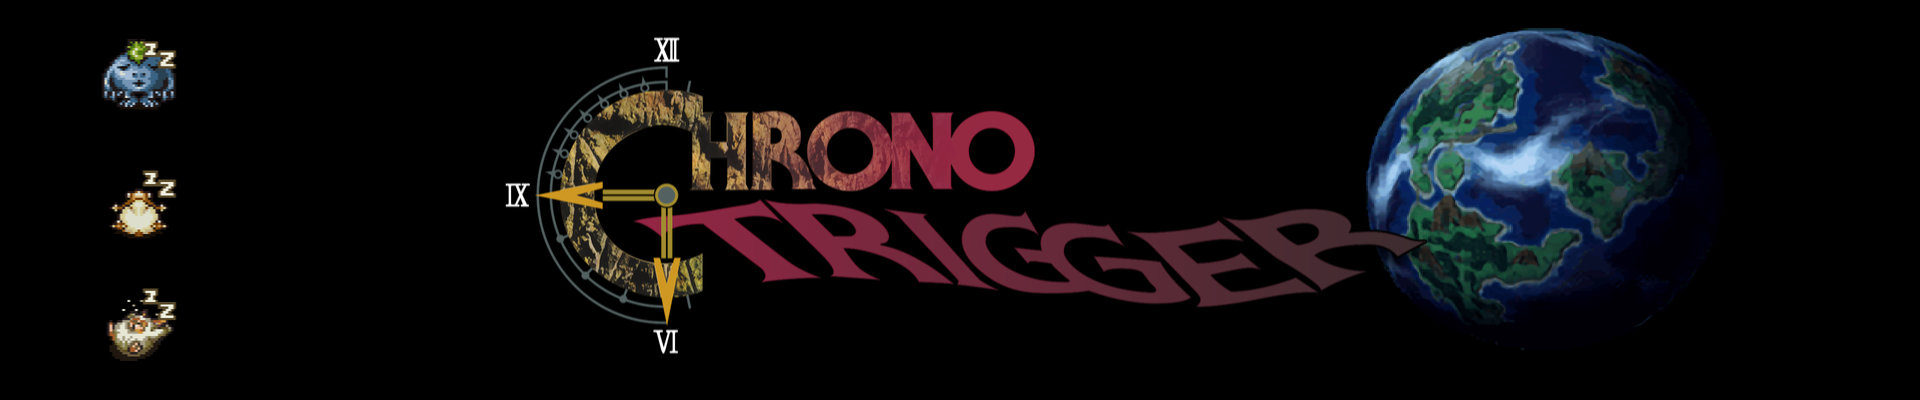 О часи: Chrono Trigger (порт на ПК)